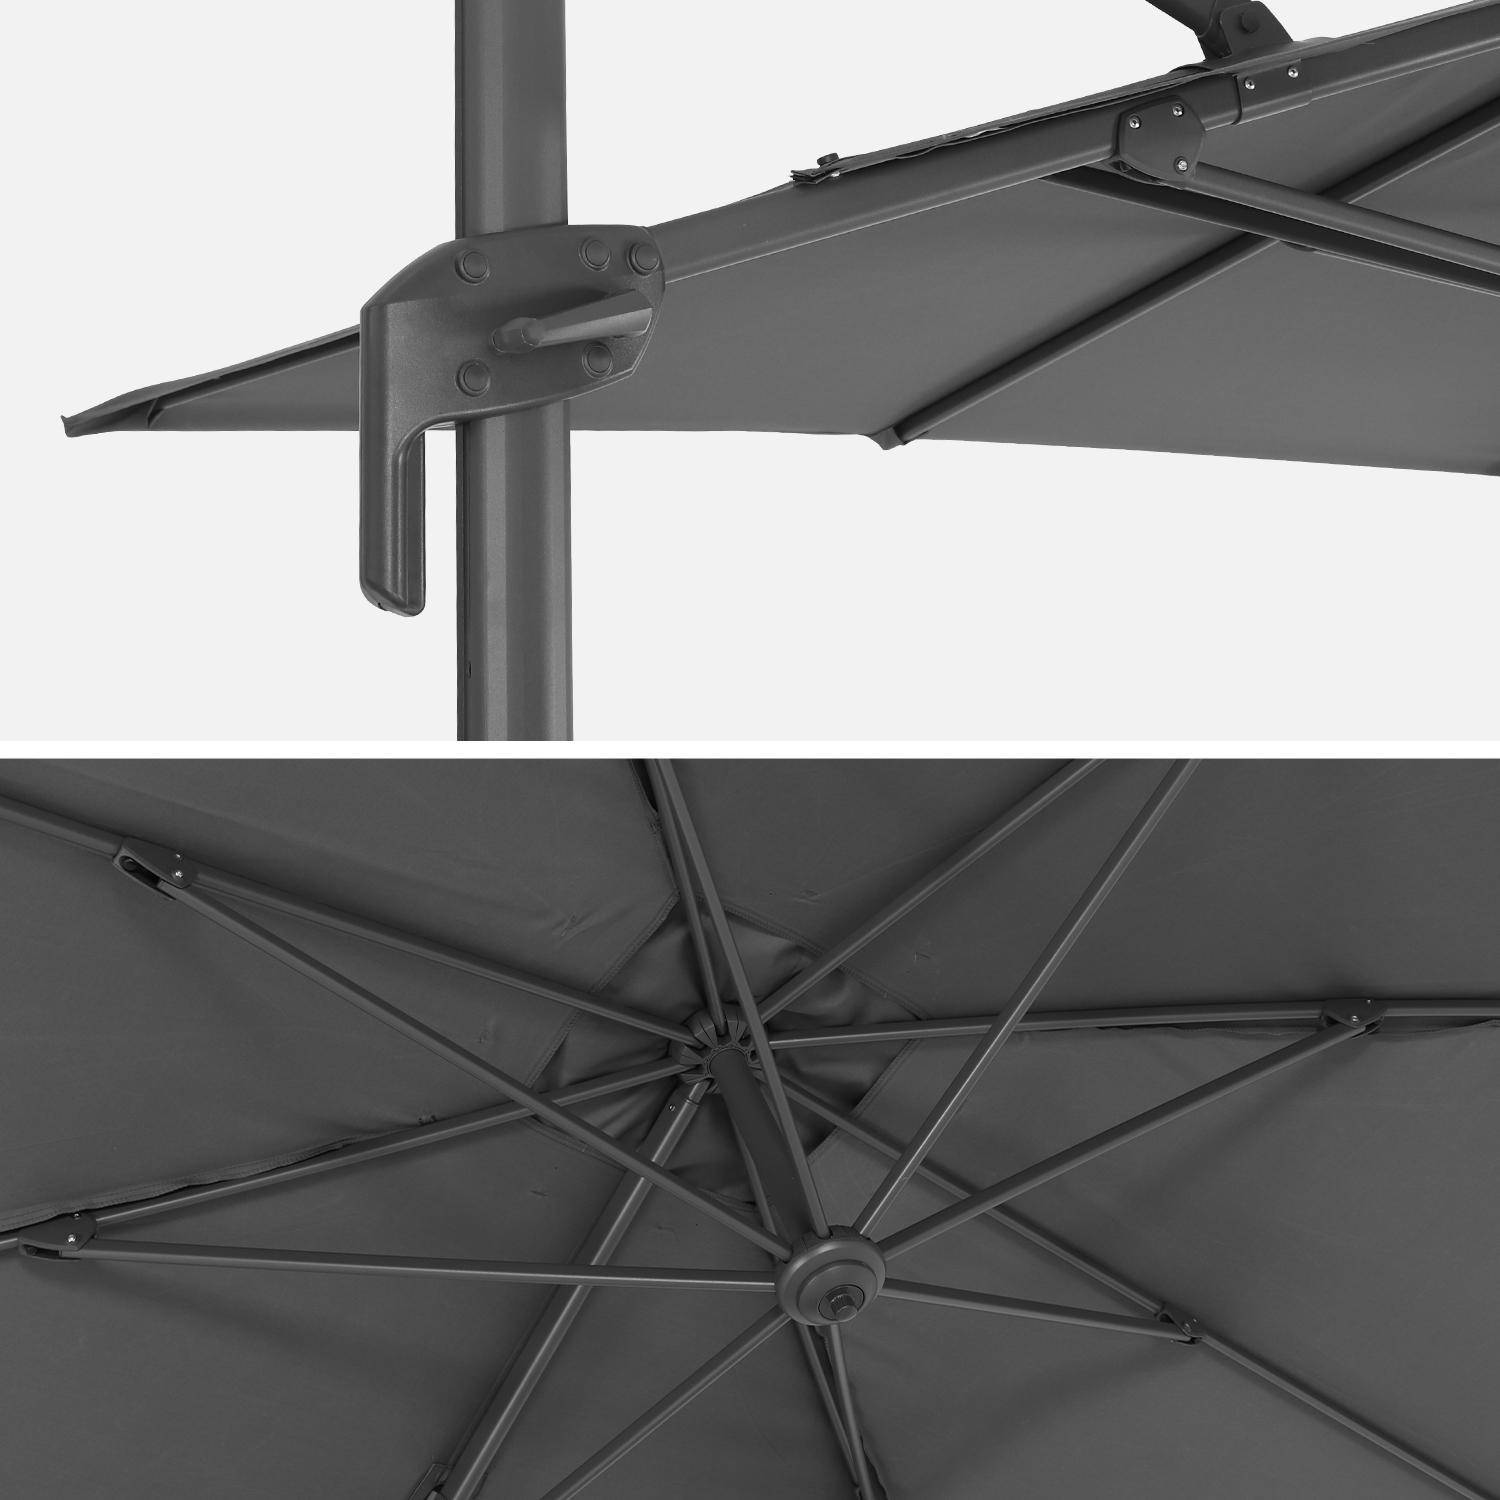 Parasol rectangular desplazado 2x3m - Antibes - Gris - Parasol desplazado que se puede inclinar, plegar y girar 360°. Photo7